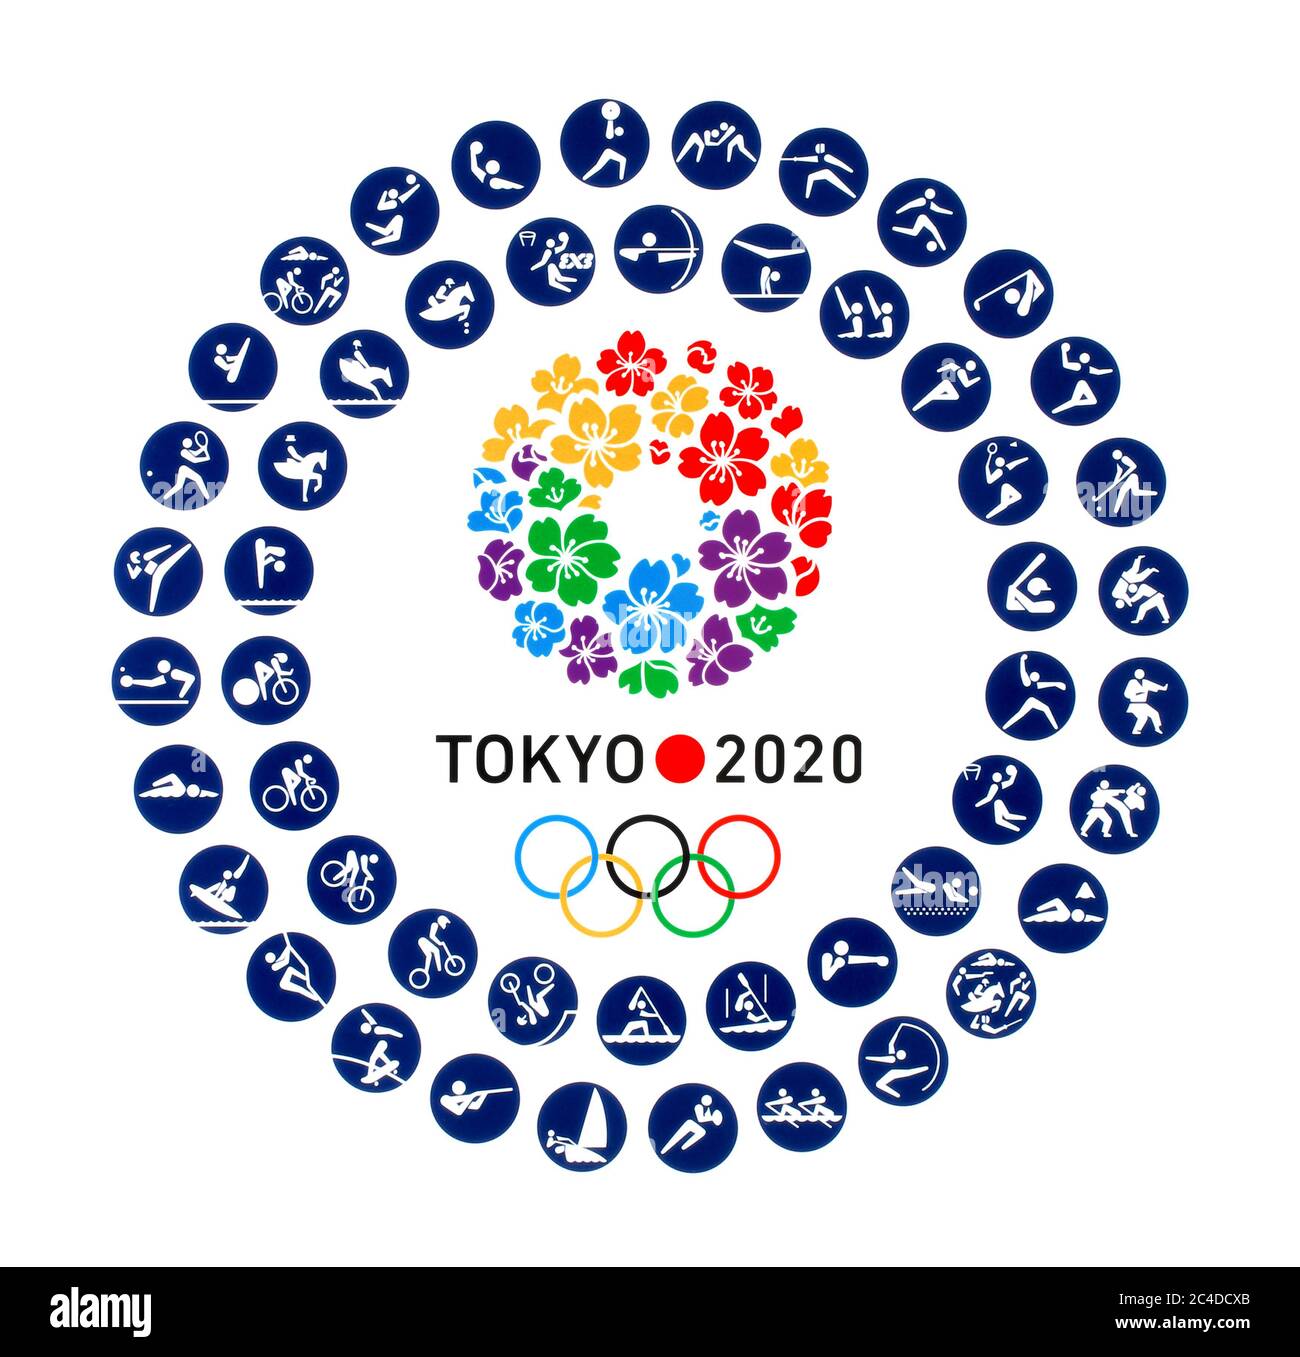 Kiev, Ucraina - 04 ottobre 2019: Logo Tokyo Candidate City per i Giochi Olimpici estivi 2020 con icone ufficiali di tipi di sport a Tokyo, Giappone, f Foto Stock